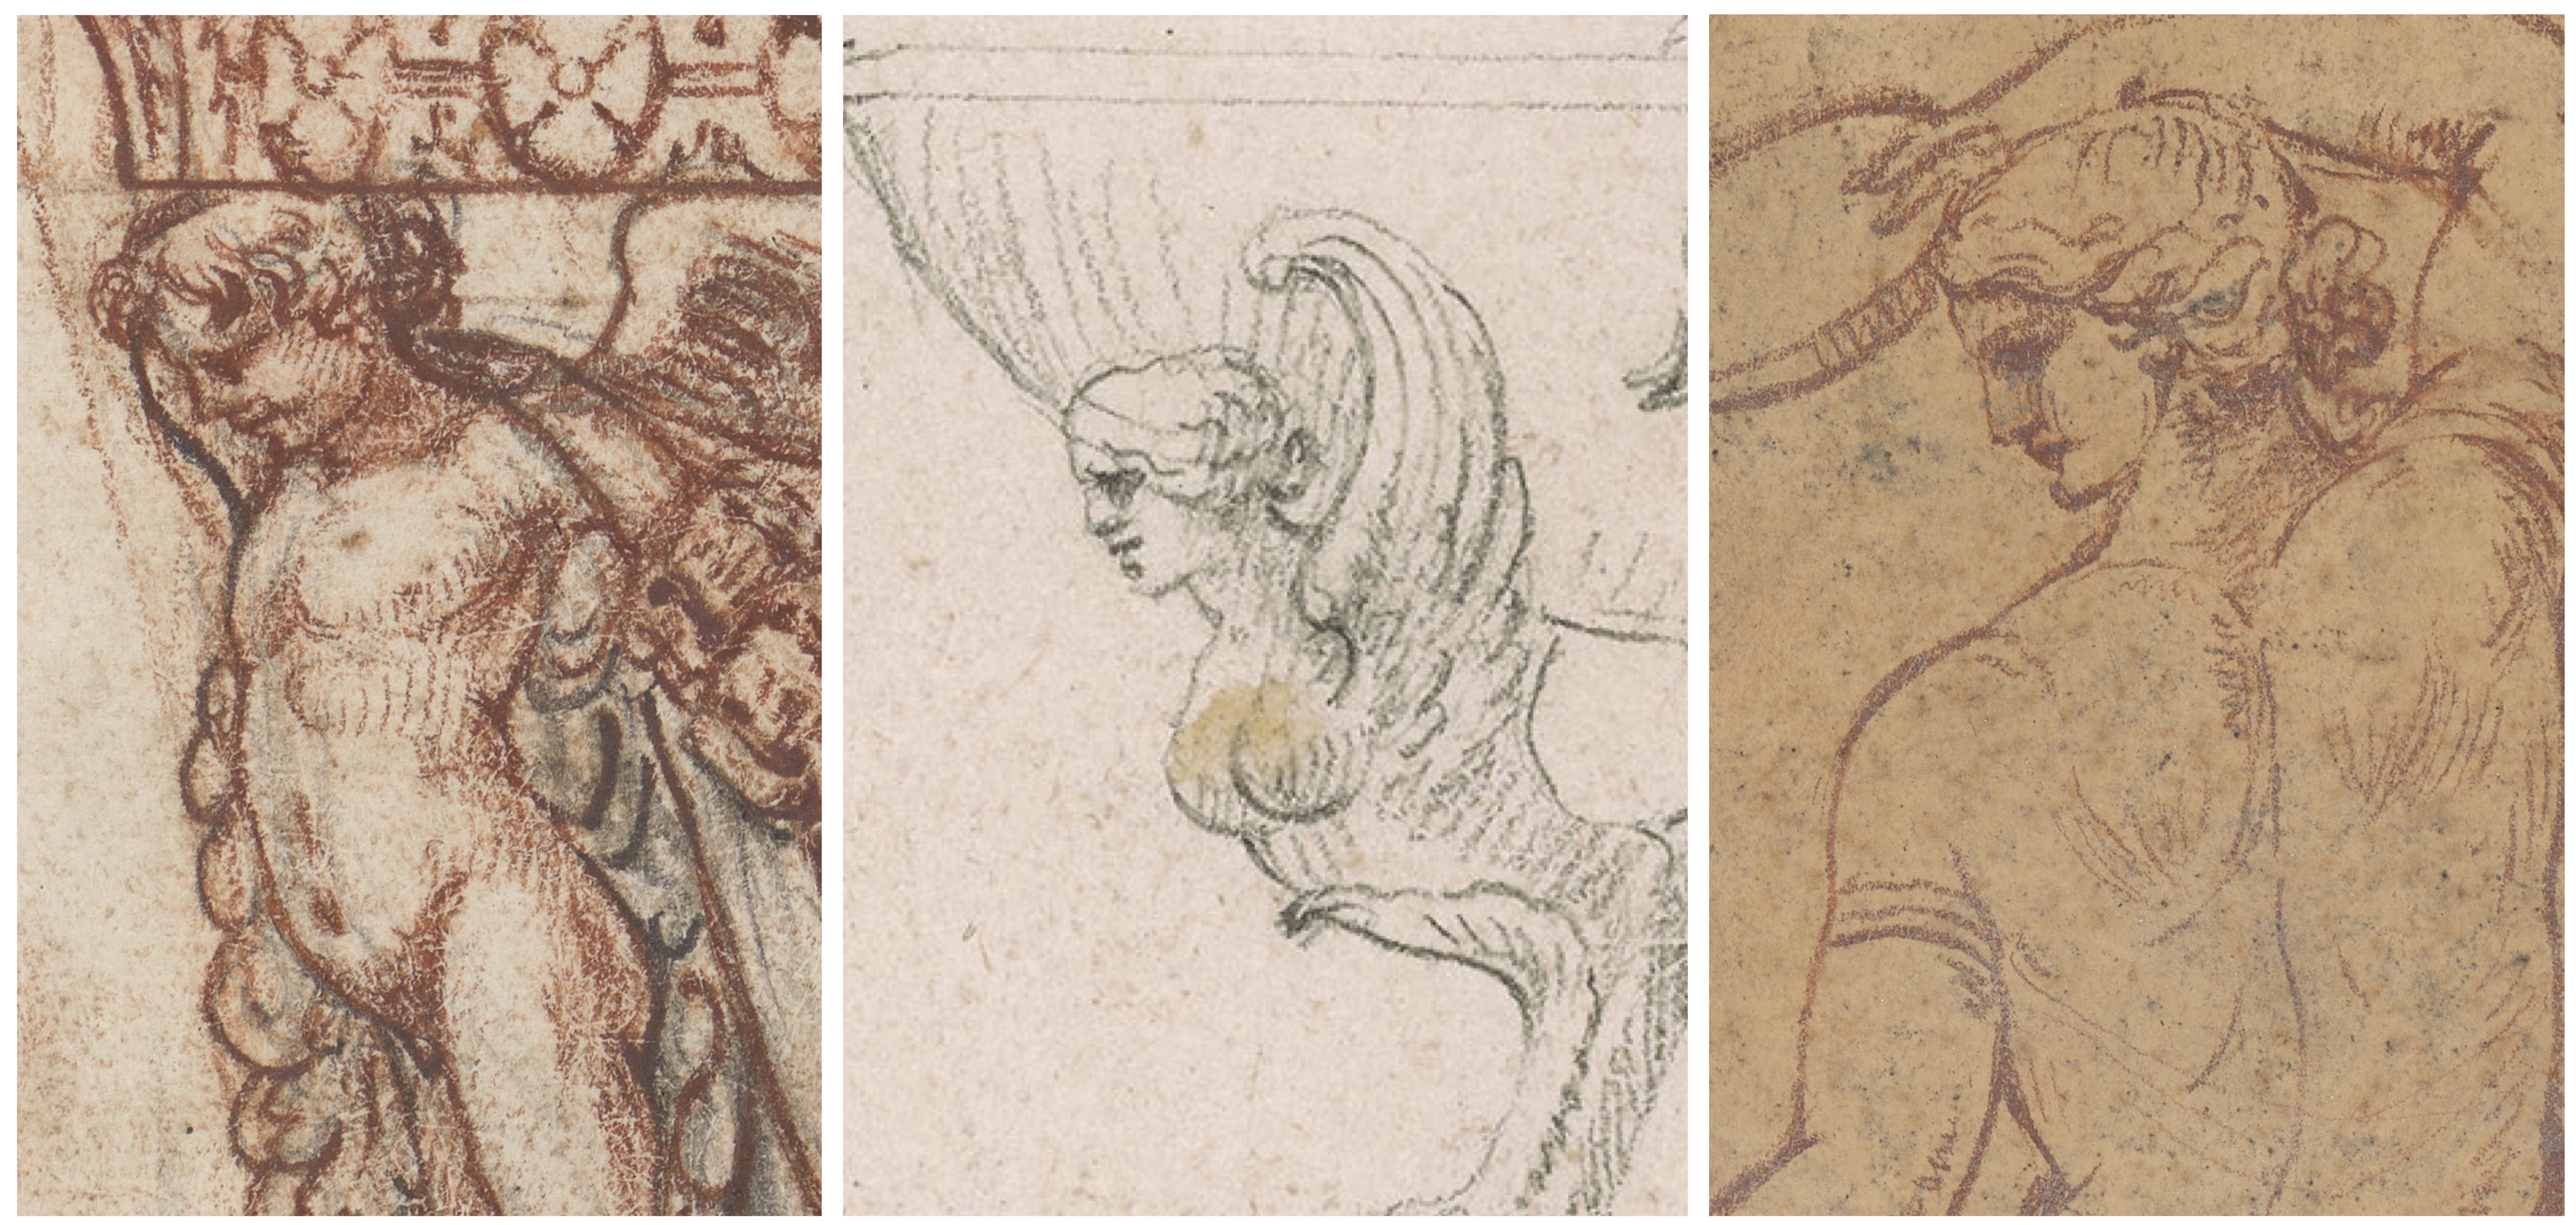 Skizzen von Piranesi die eine Brunnenverzierung zeigen